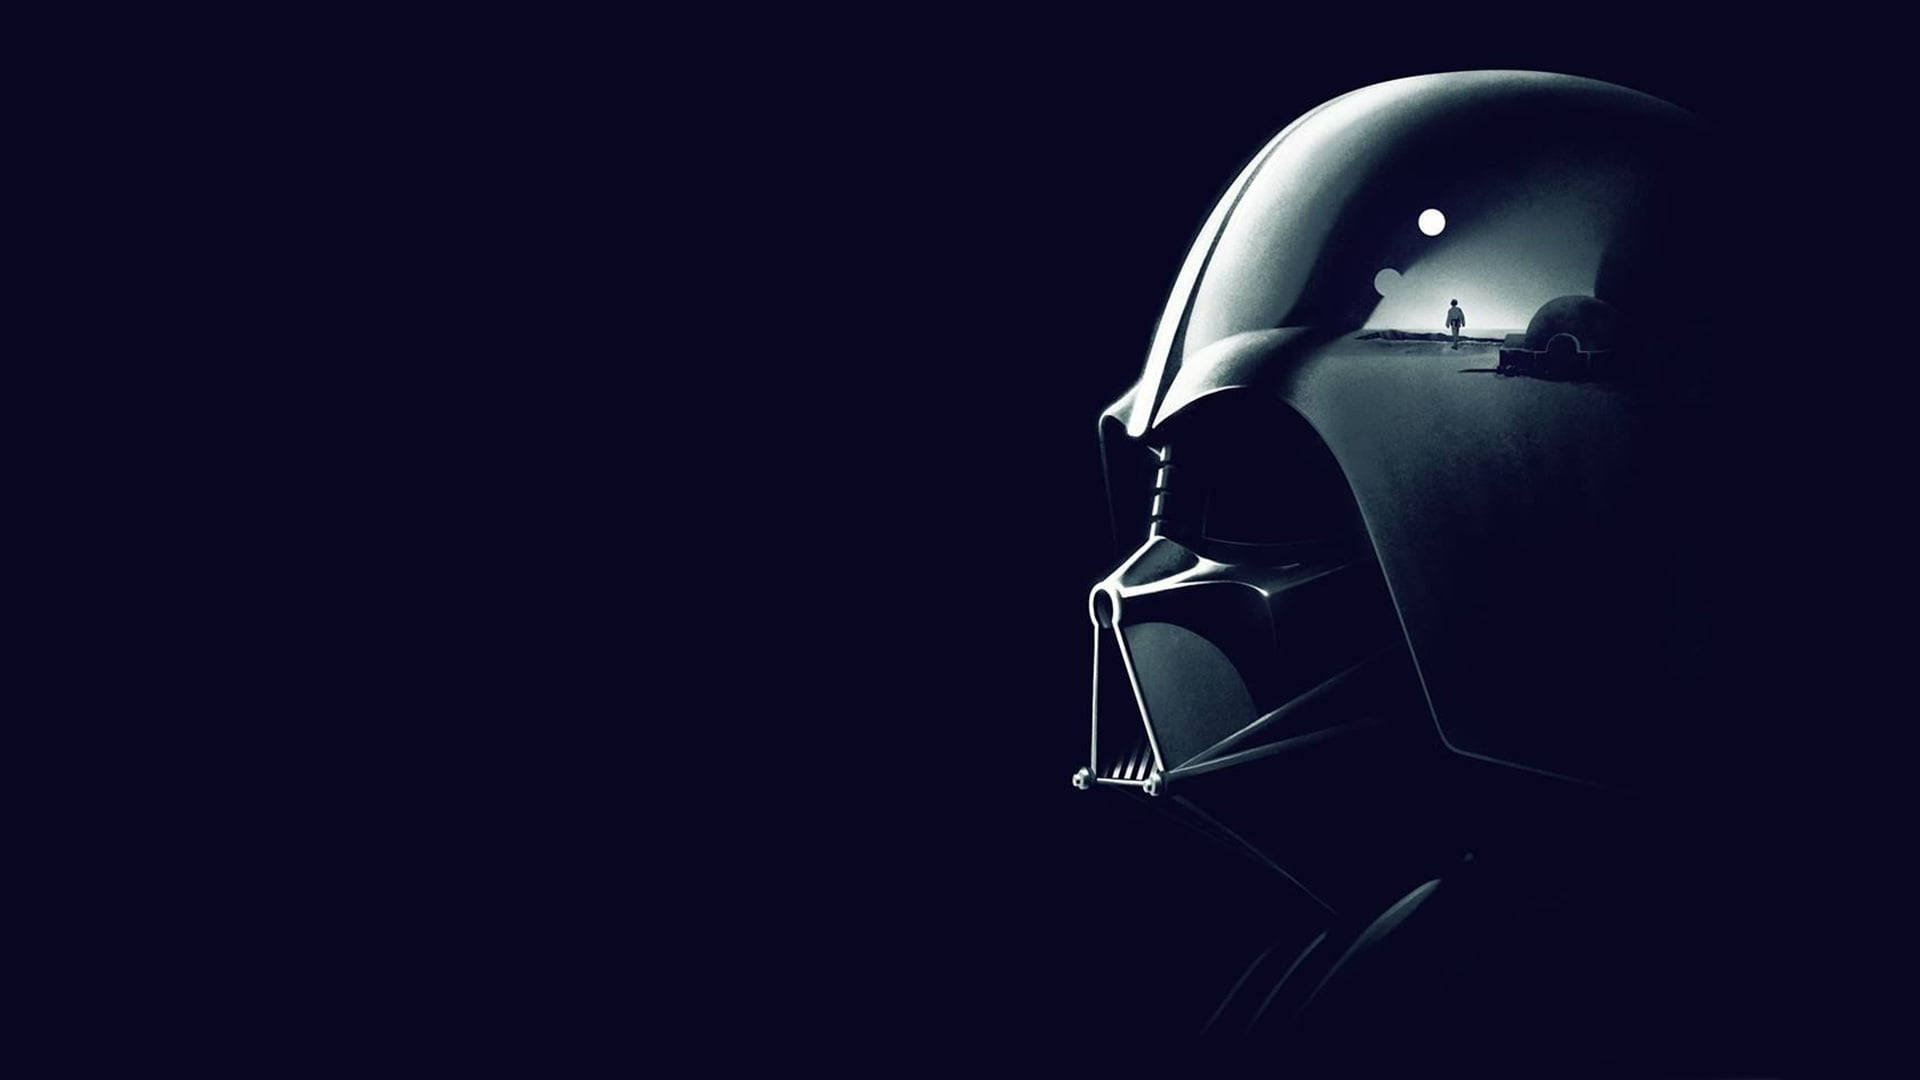 Cool Darth Vader Of Star Wars Tablet Background